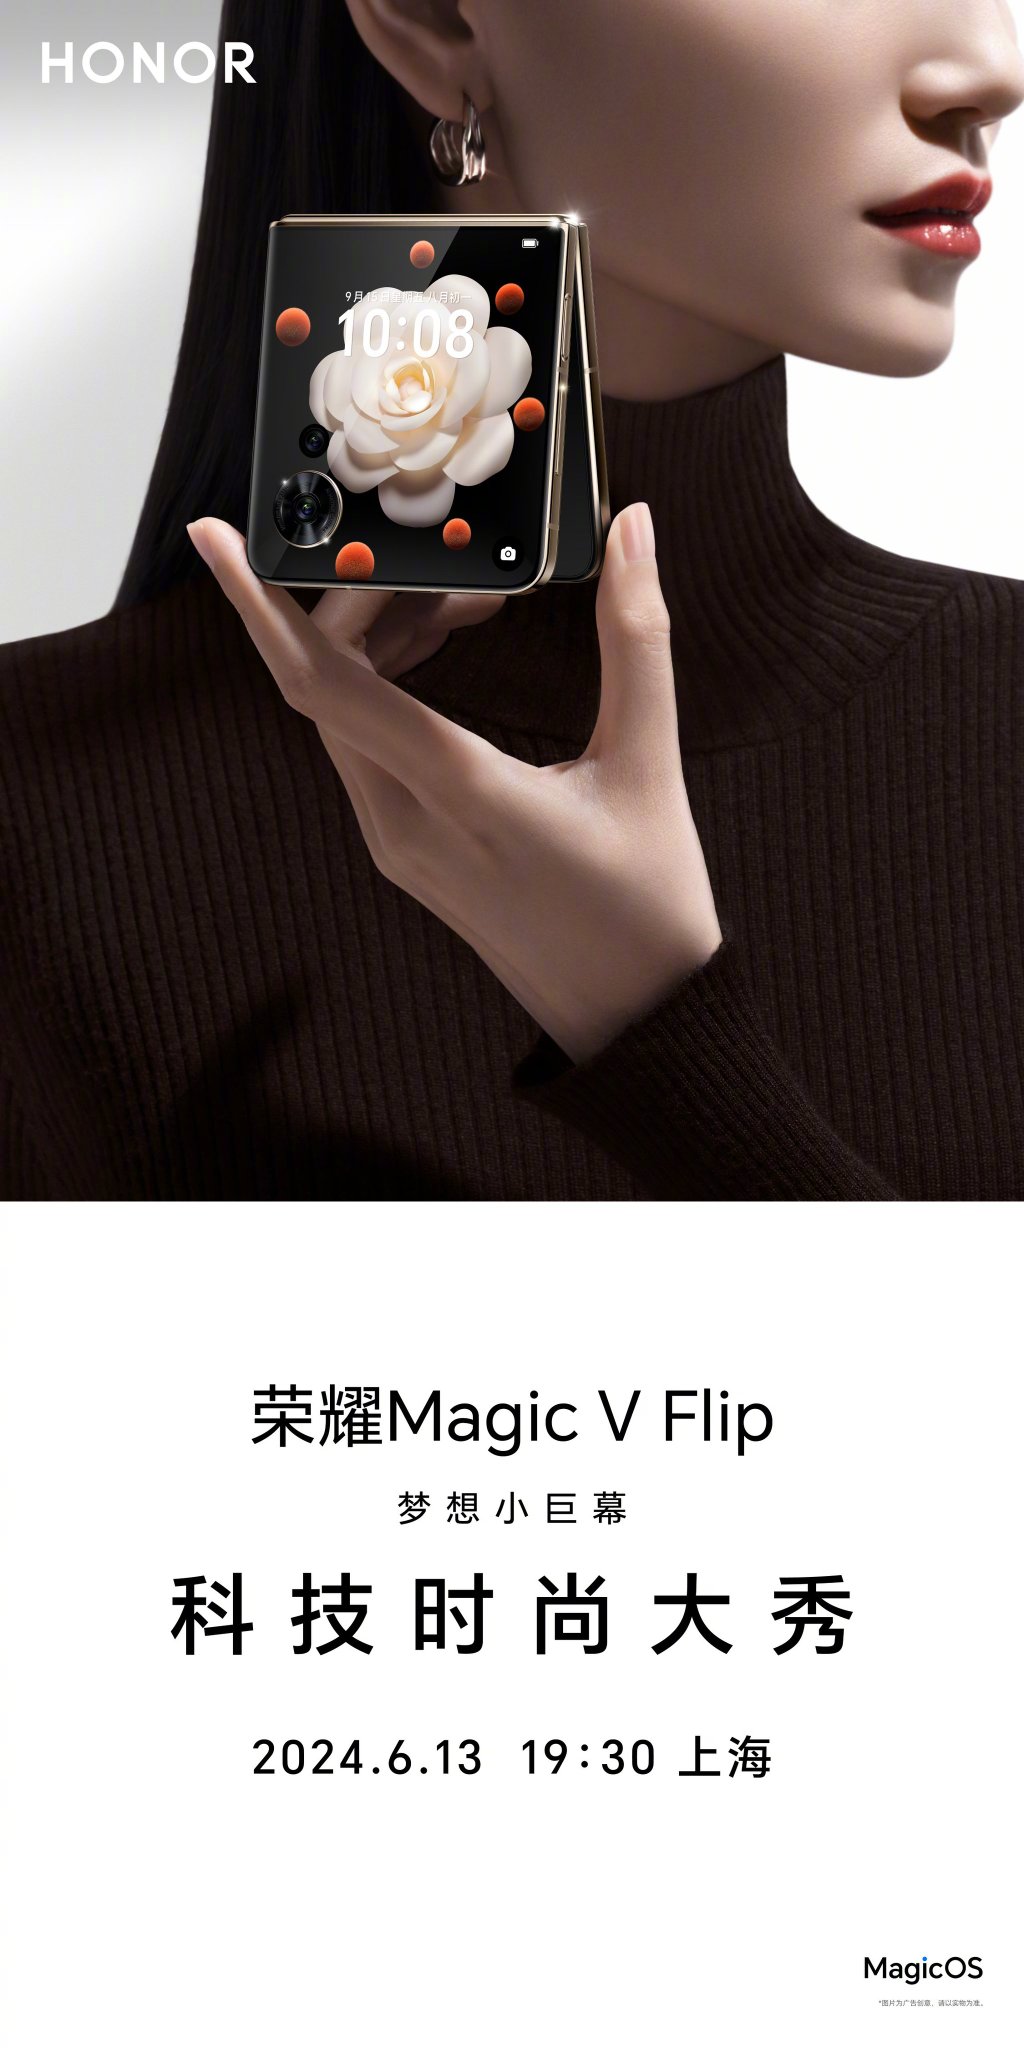 смартфон Honor Magic V Flip